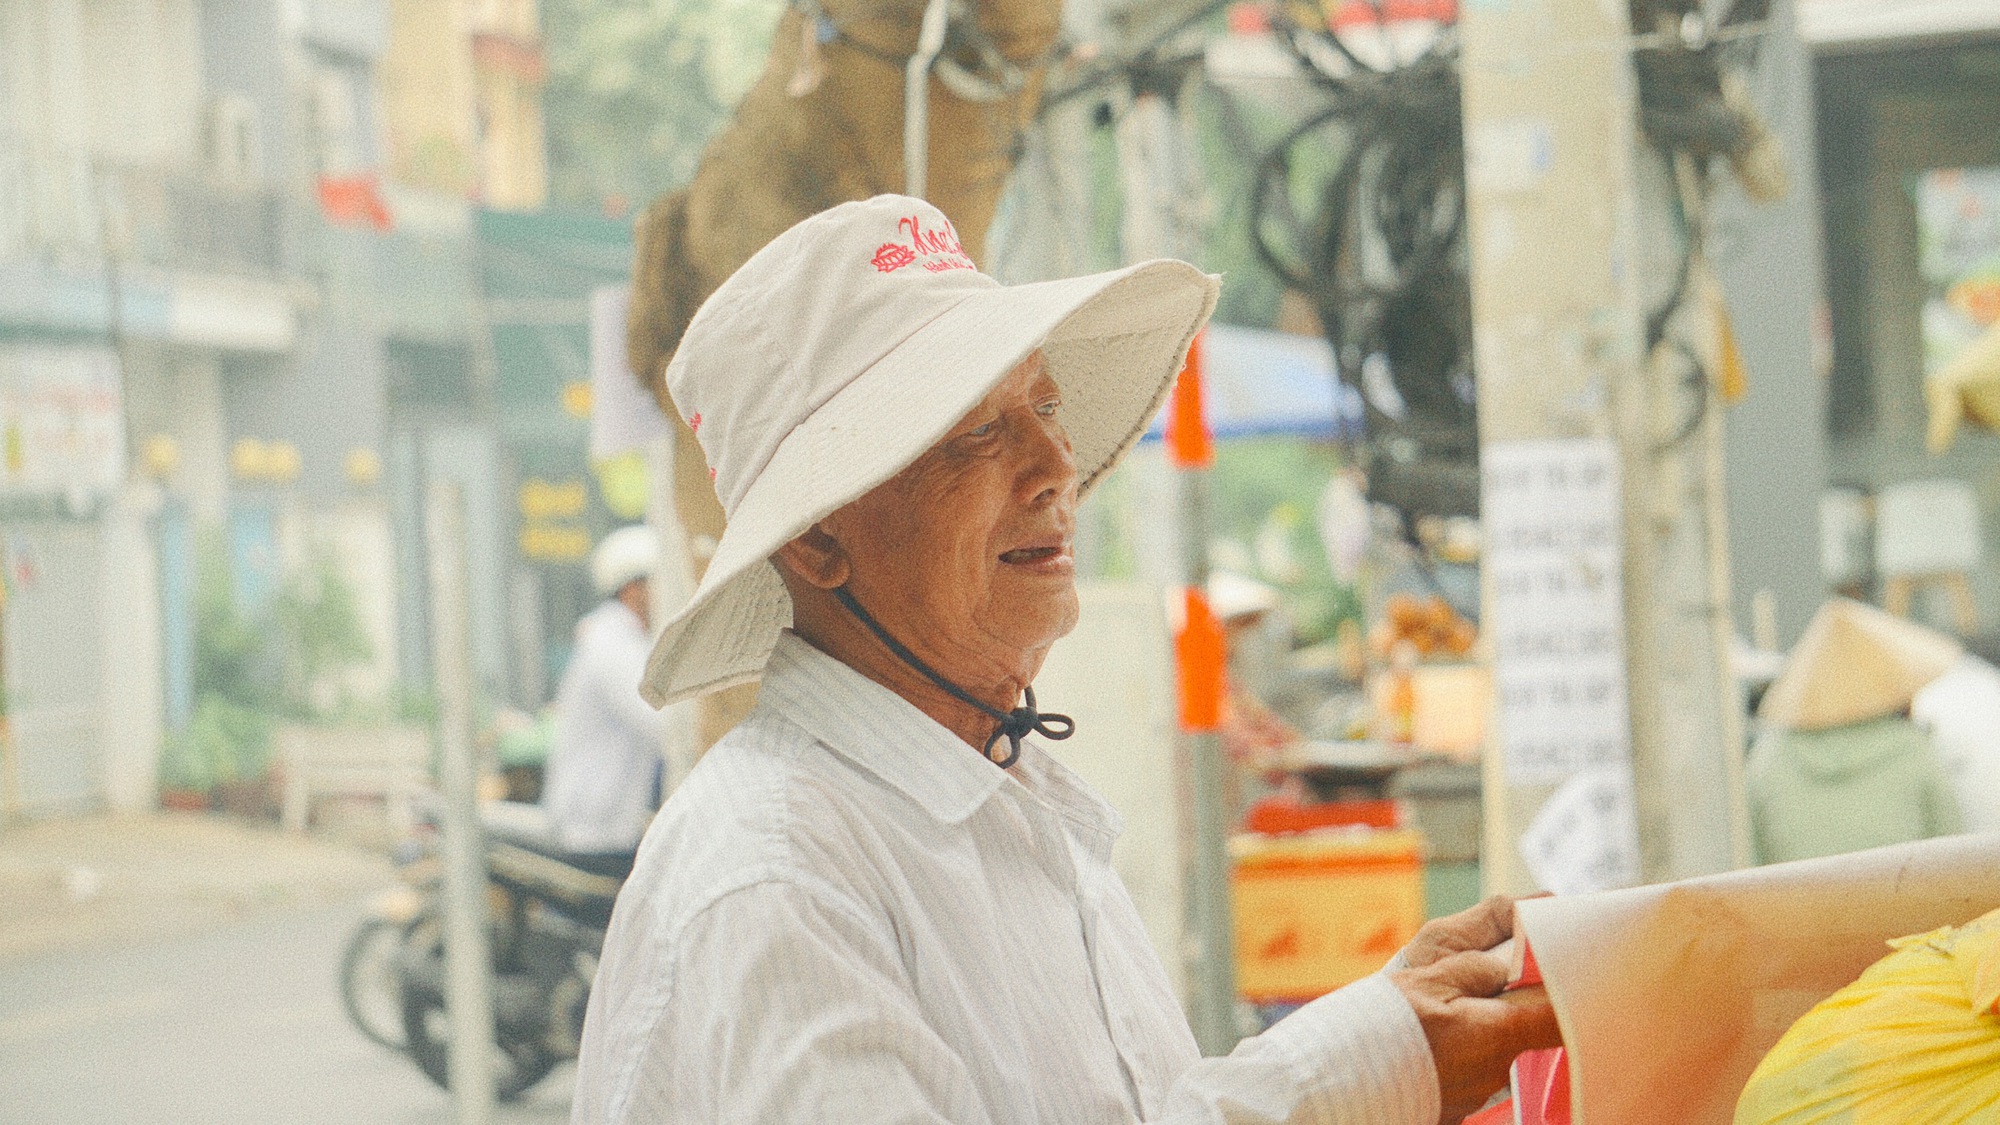 Cụ ông gần 90 tuổi đội mưa bán sách cũ ở vỉa hè Sài Gòn: "Lần nào thấy người trẻ đến mua sách là tôi vui lắm"- Ảnh 1.